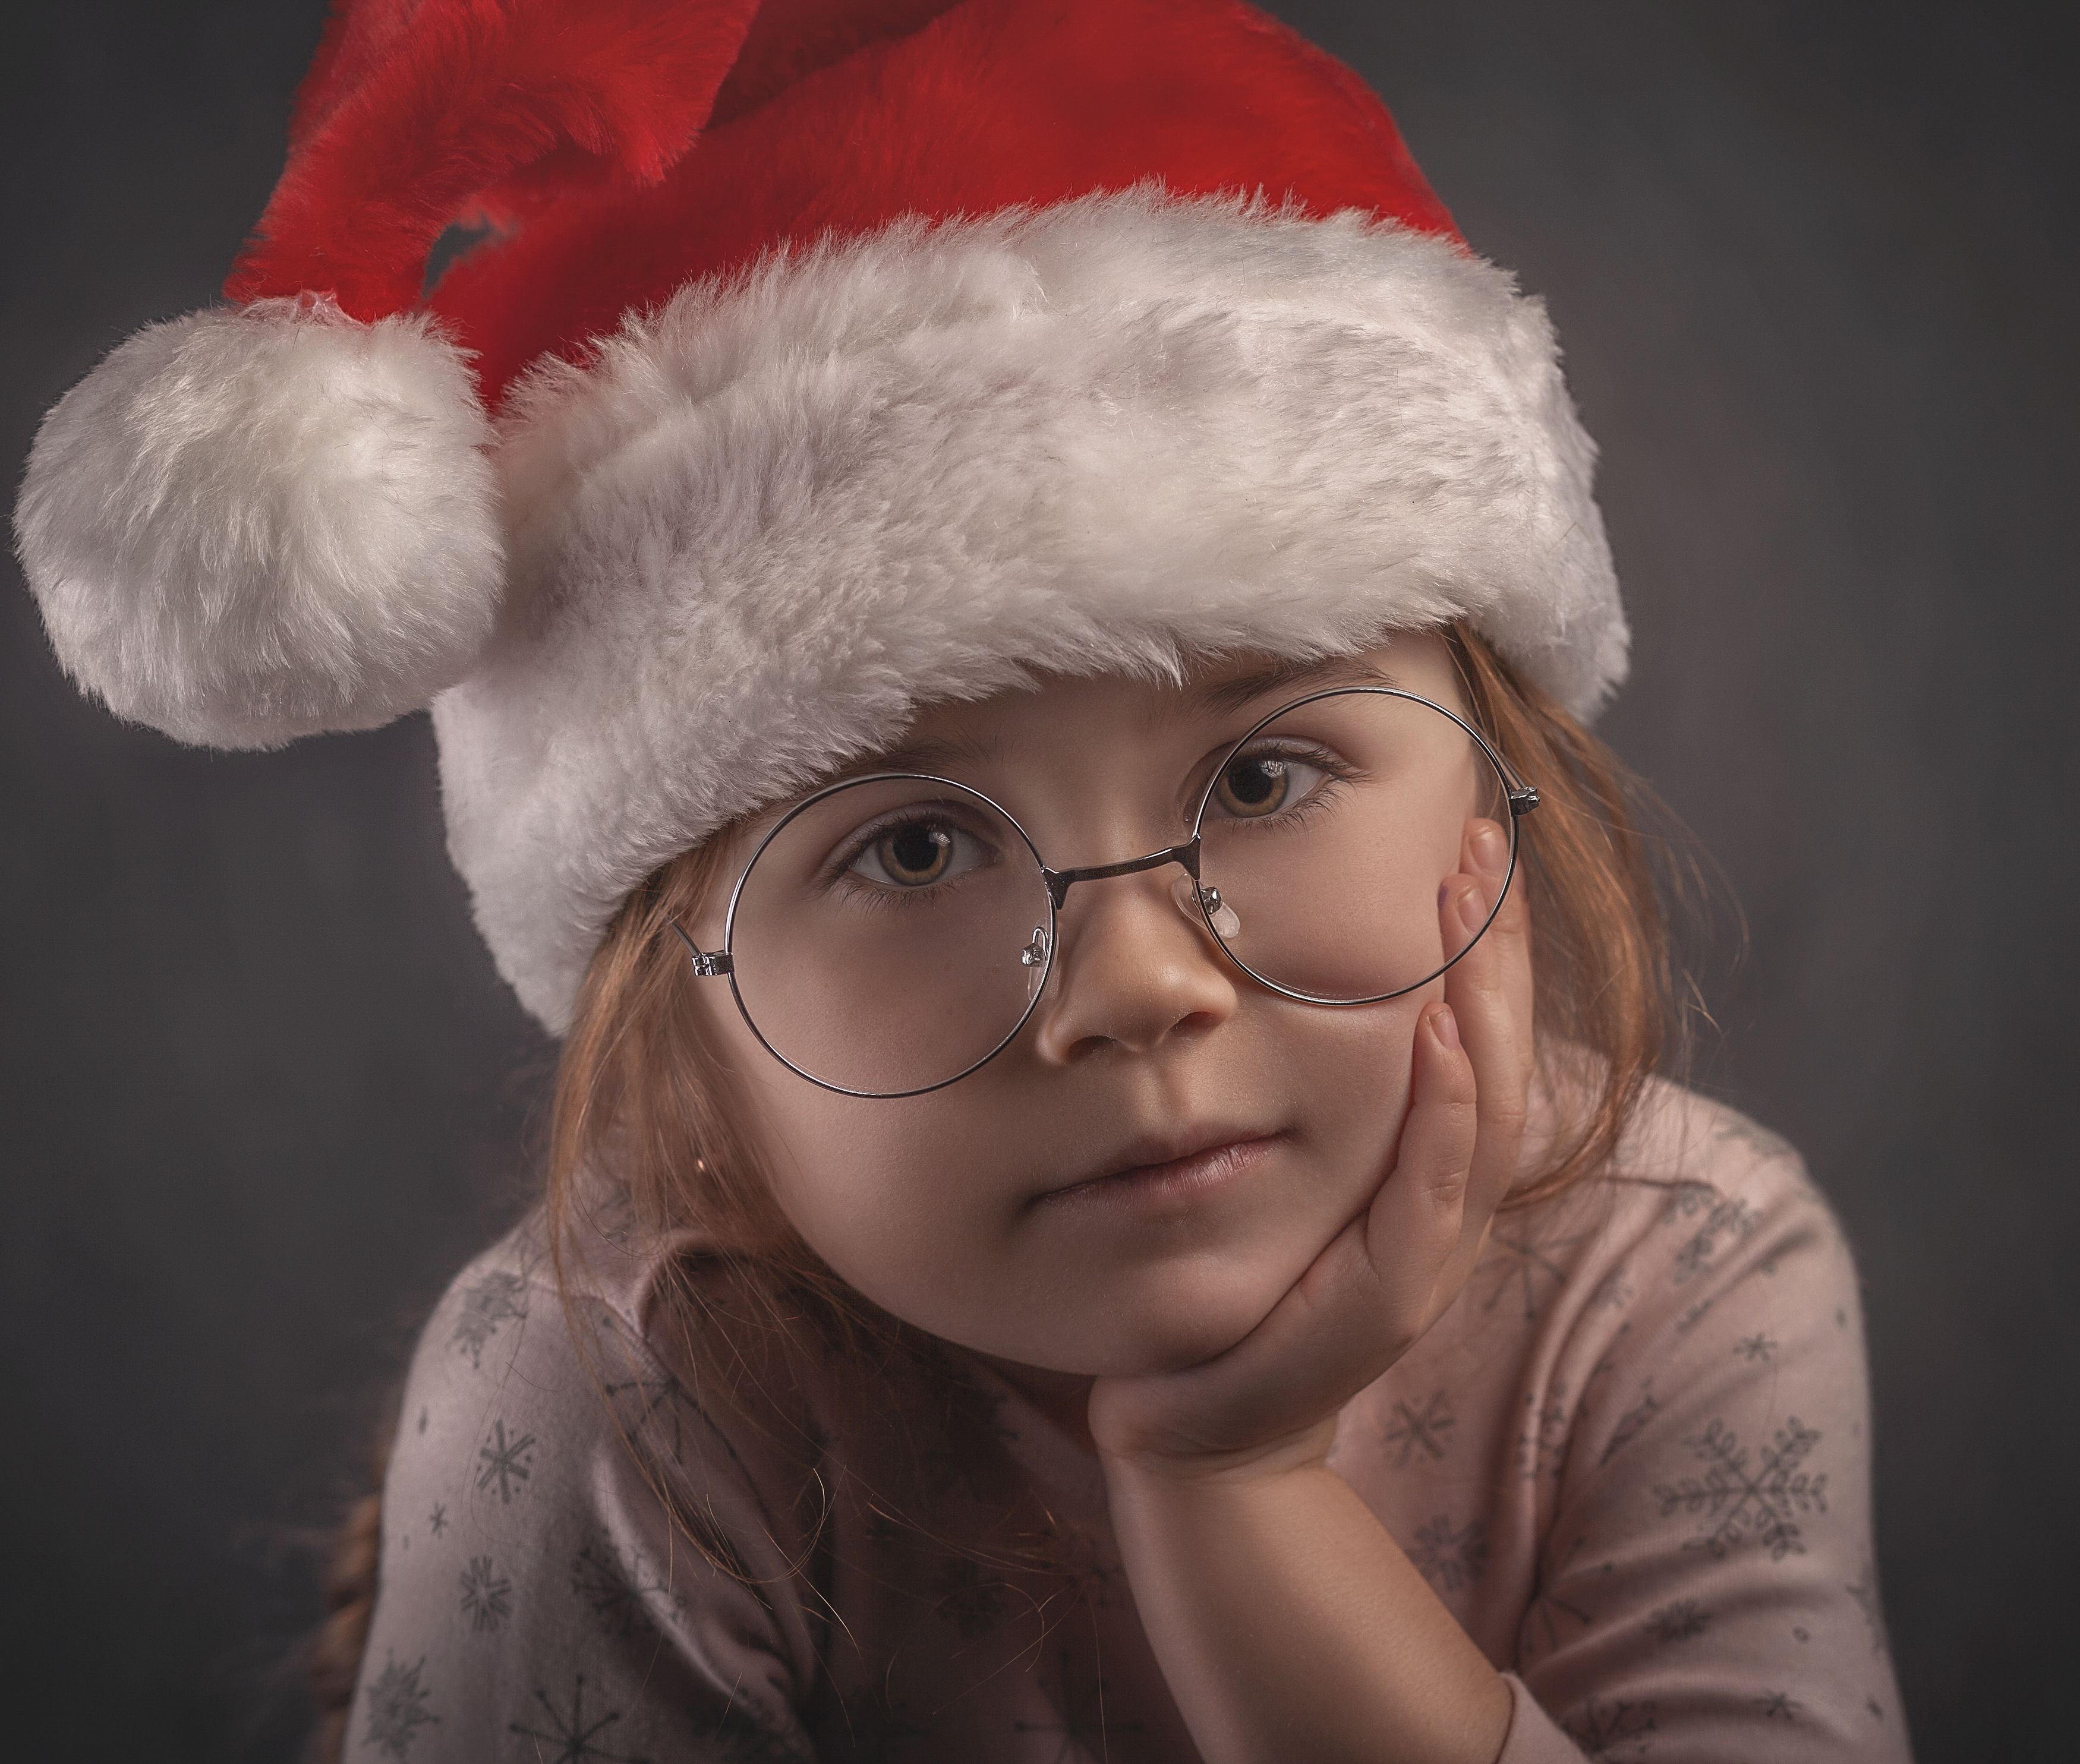 портрет, ребёнок, взгляд, новый год, child, portrait, winter, sight, new year, Алексей Сологубов